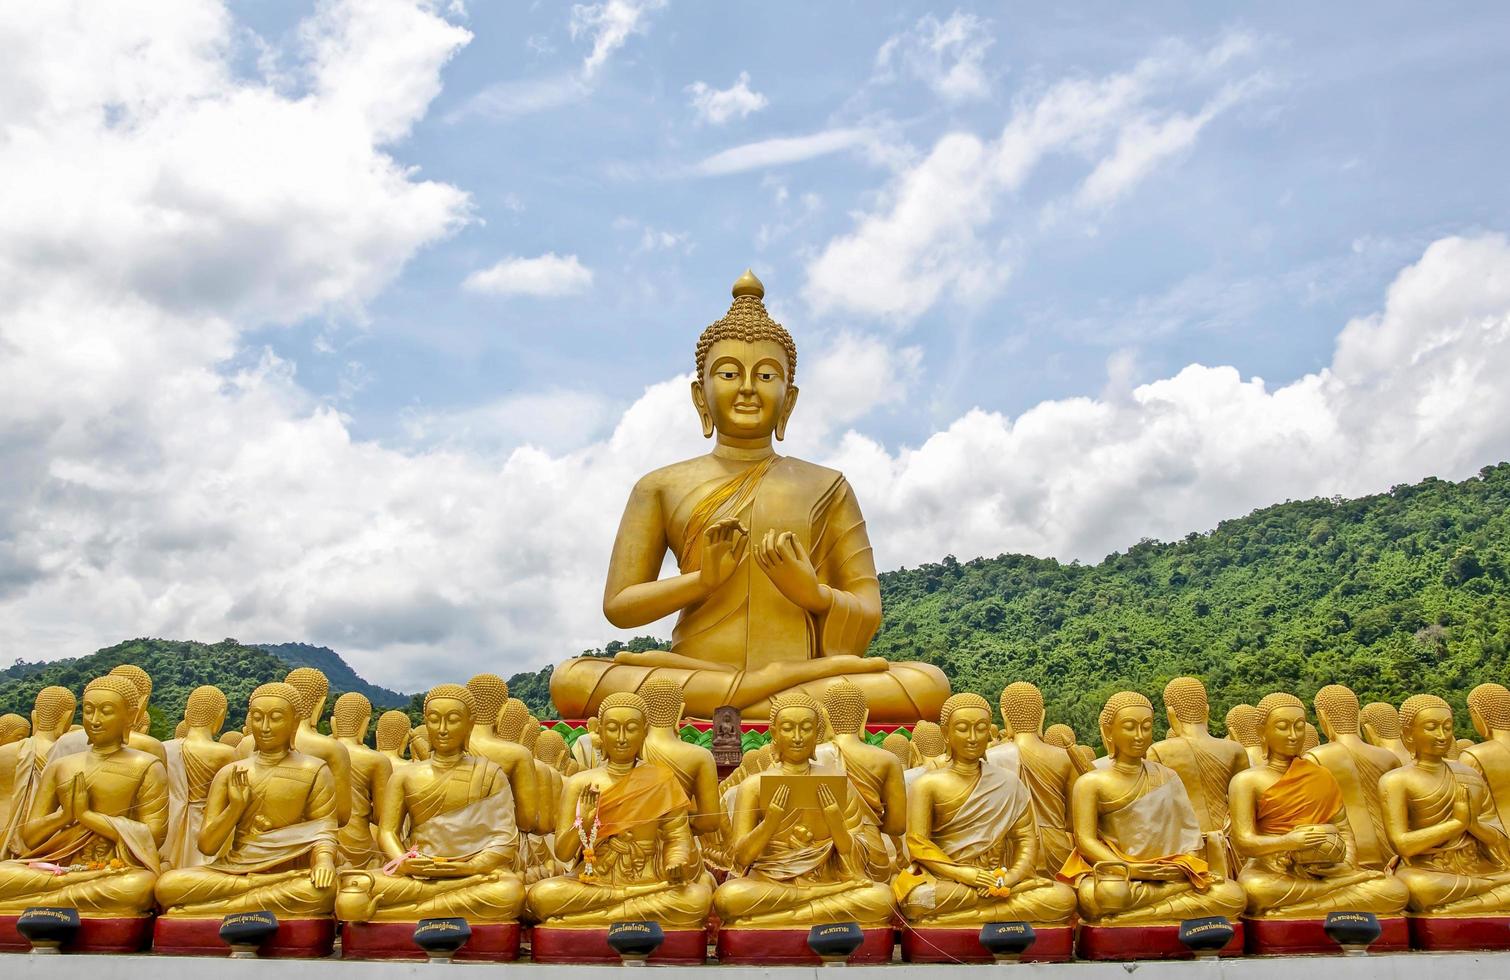 estátua de buda dourada no buddha memorial park, tailândia foto